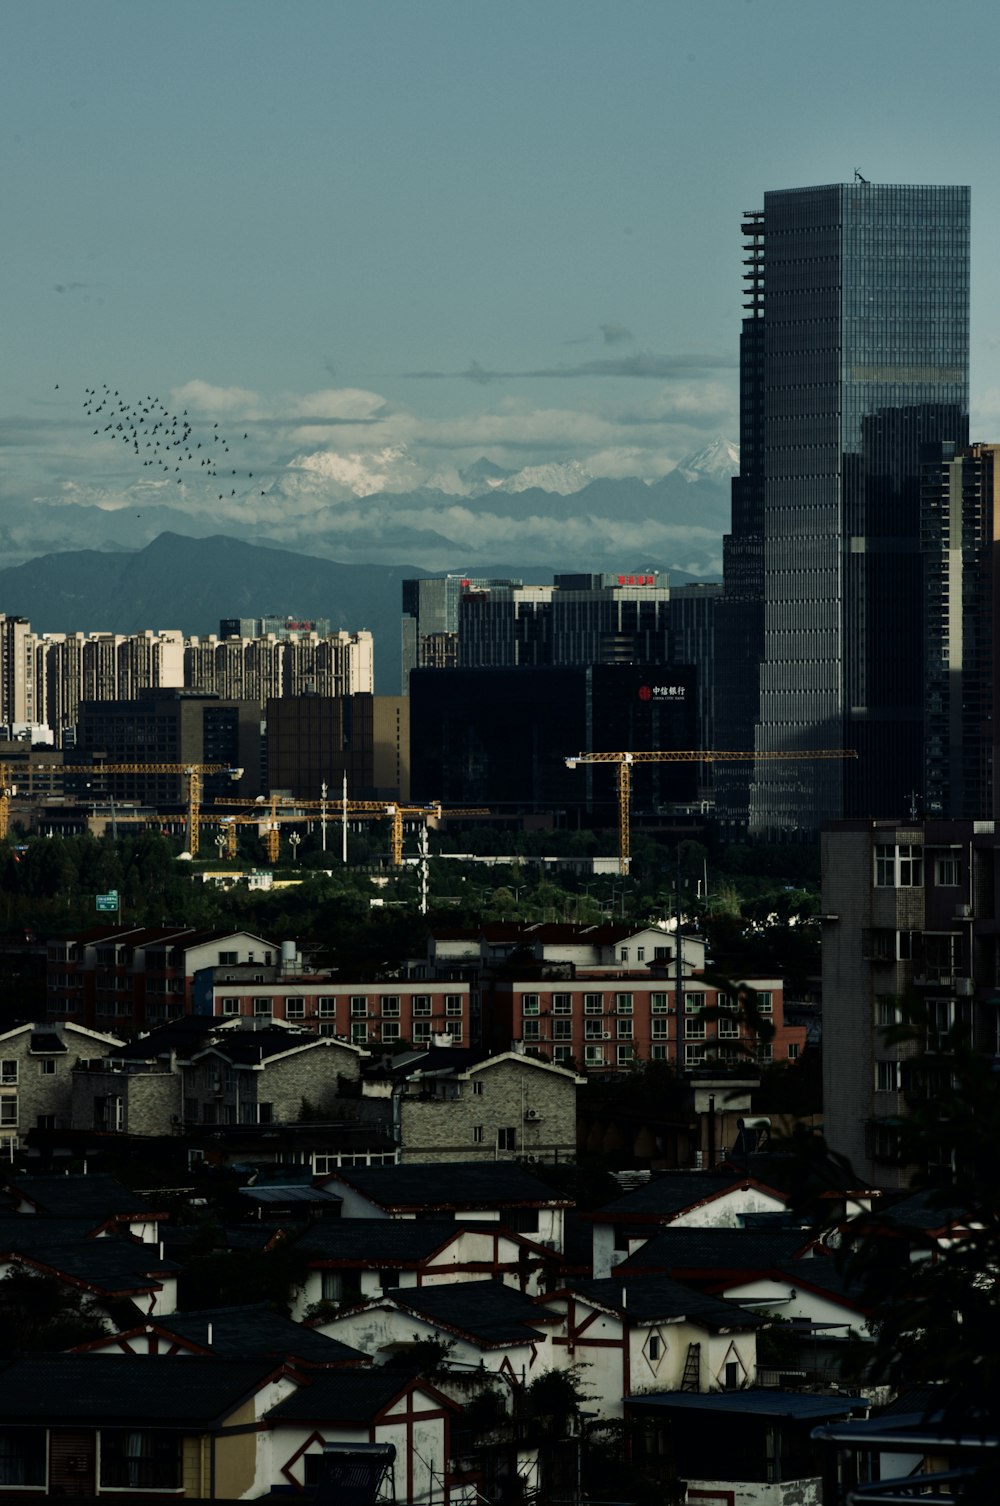 Una vista di una città con molti edifici alti